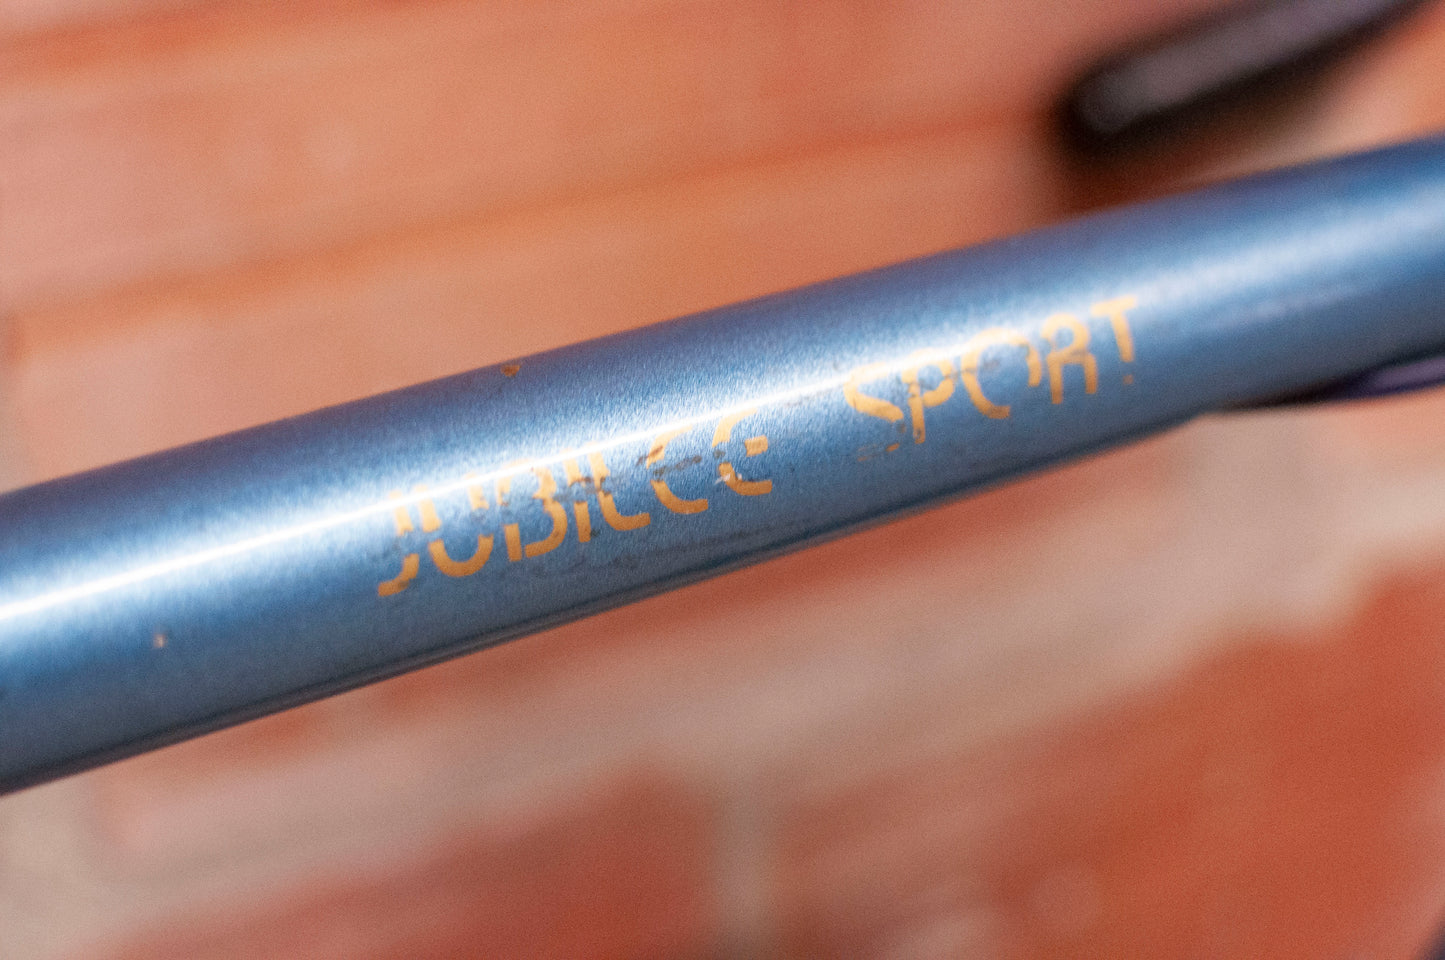 Motobecane Jubilee Sport Vintage Road Bike, blue, 57 cm/Large